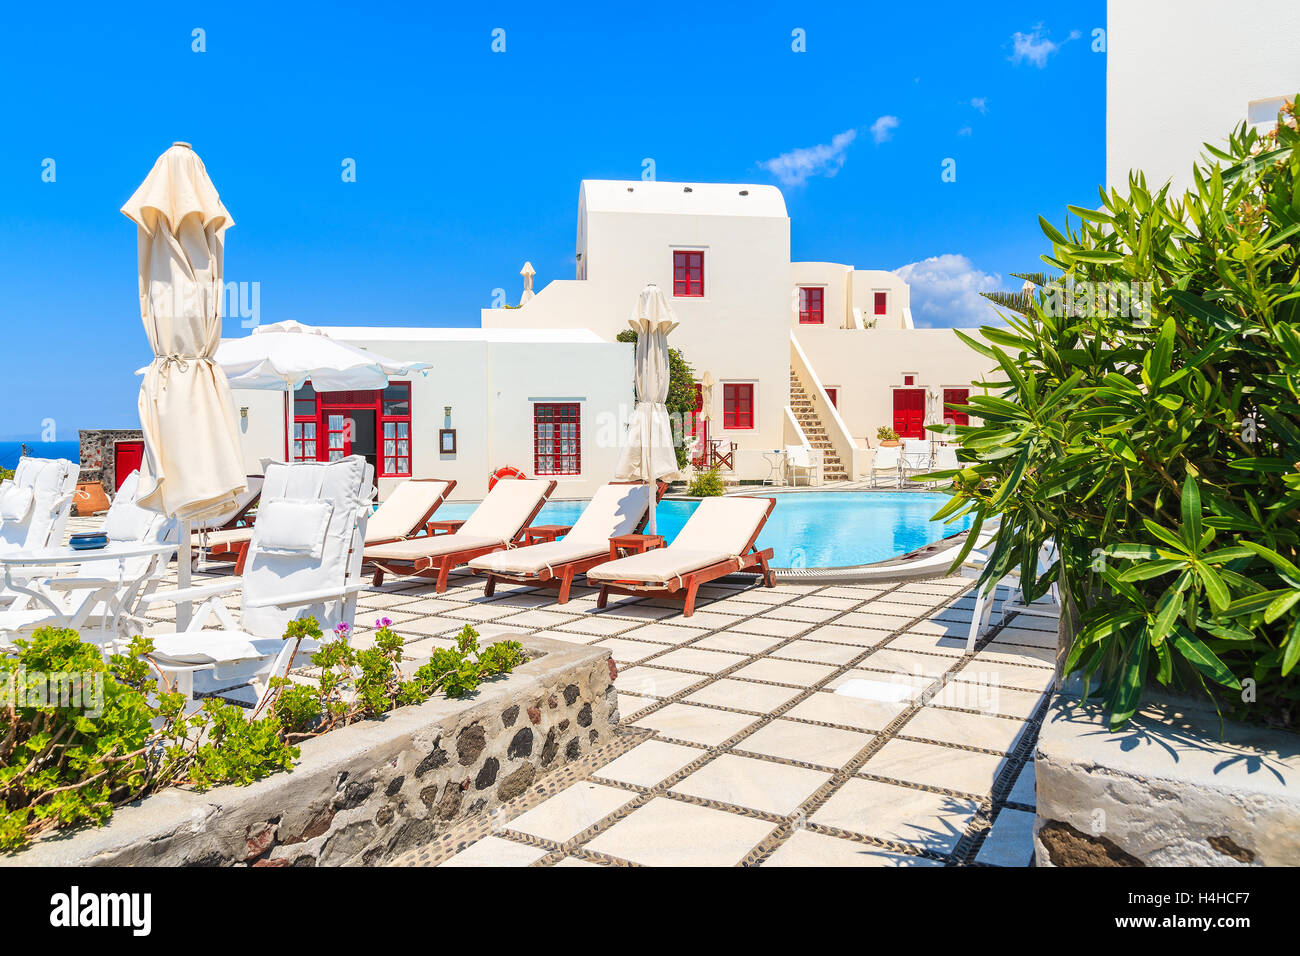 Villaggio di Oia - Santorini Island - 23 Maggio 2016: tipico stile greco apartment hotel con piscina nel villaggio di Oia - Santorini Island, Gr Foto Stock